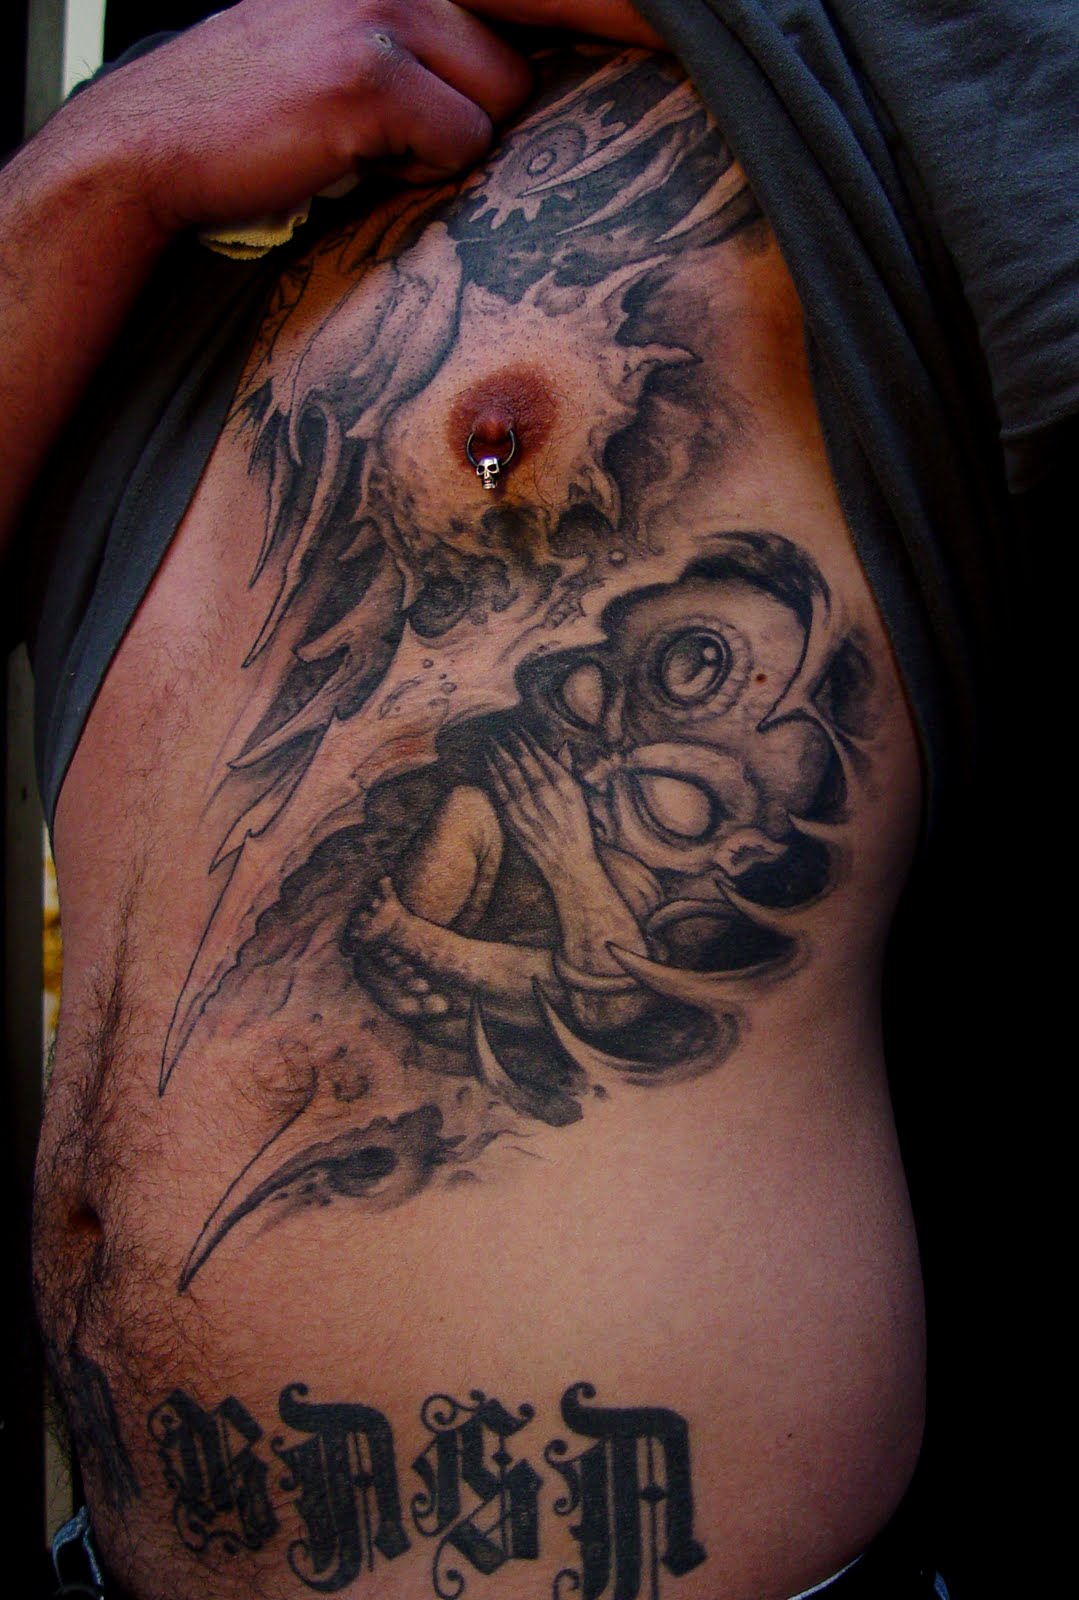 Tattoo art 3D tattoos darkart biomechanical tattoos